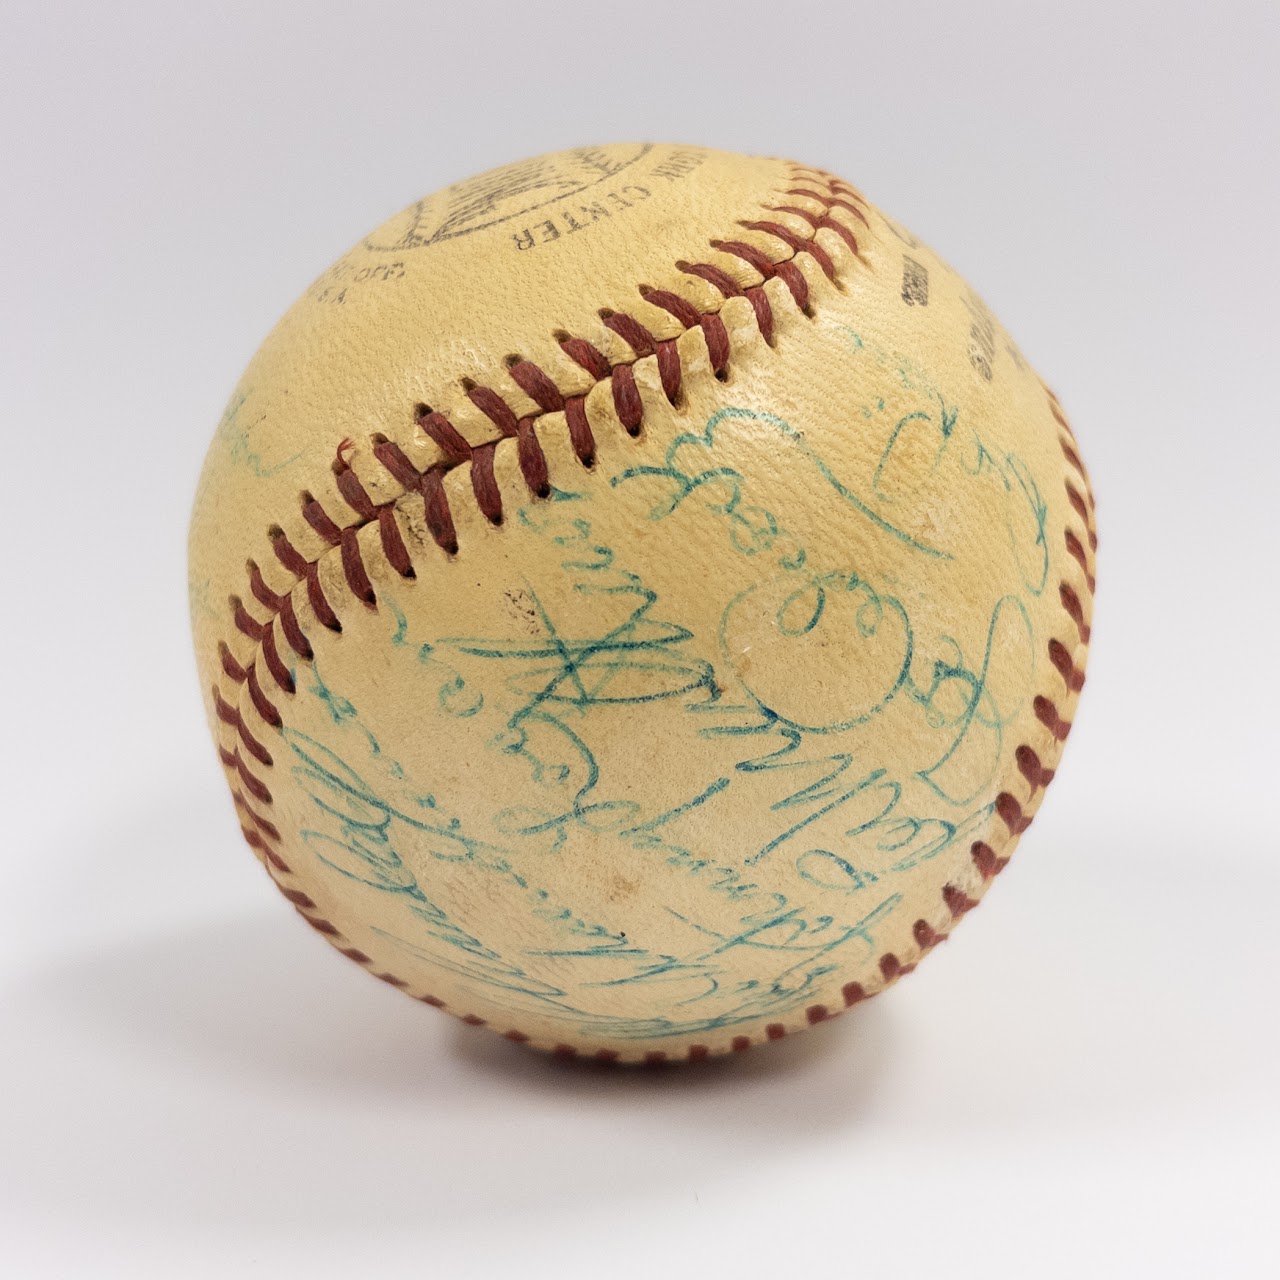 Hank Aaron, Warren Spahn, and Milwaukee Braves Signed Baseball